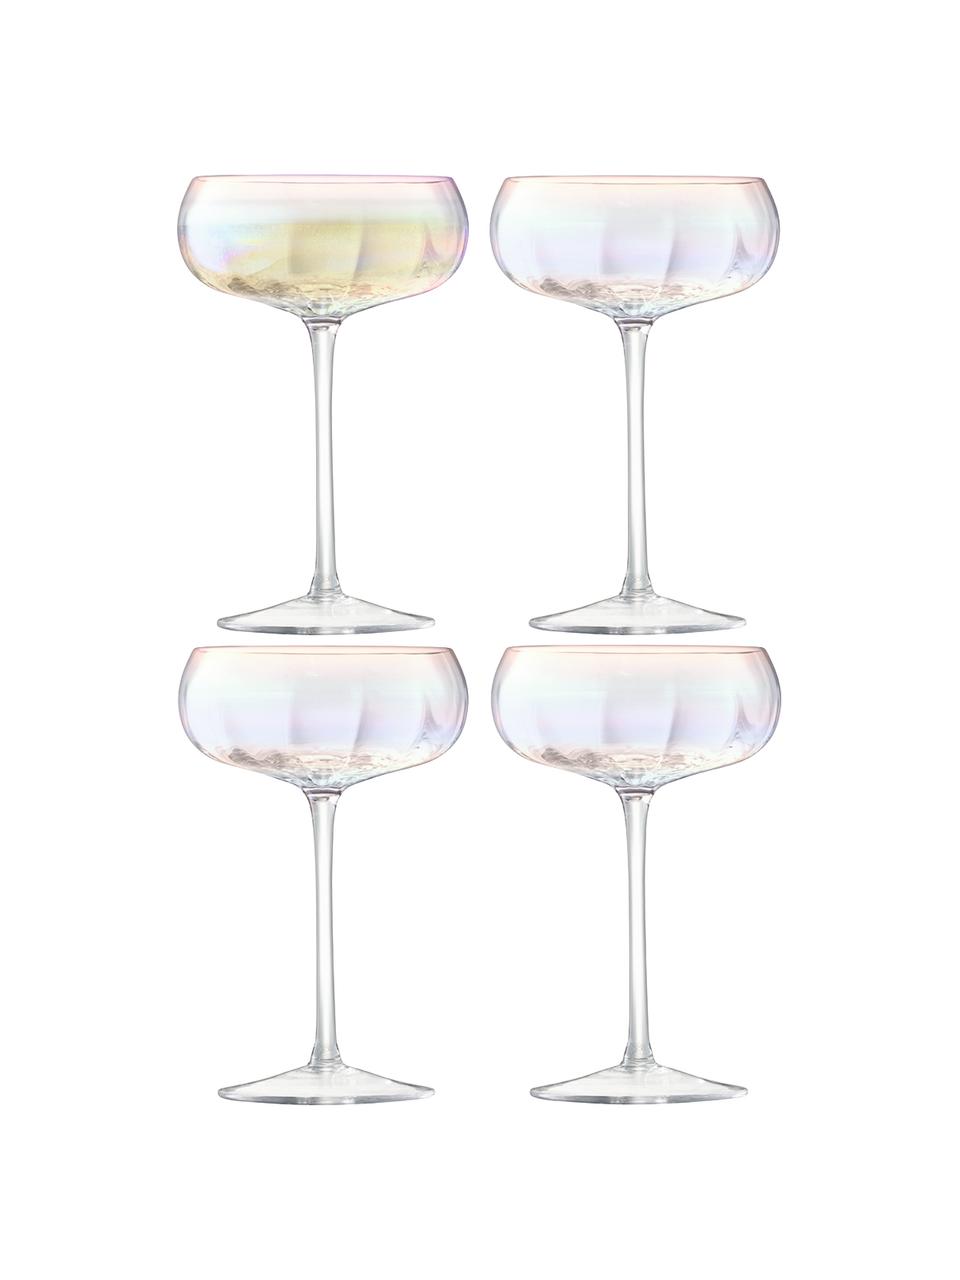 Mundgeblasene Champagnerschalen Pearl mit schimmerndem Perlmuttglanz, 4 Stück, Glas, Perlmutt-Schimmer, Ø 11 x H 16 cm, 300 ml